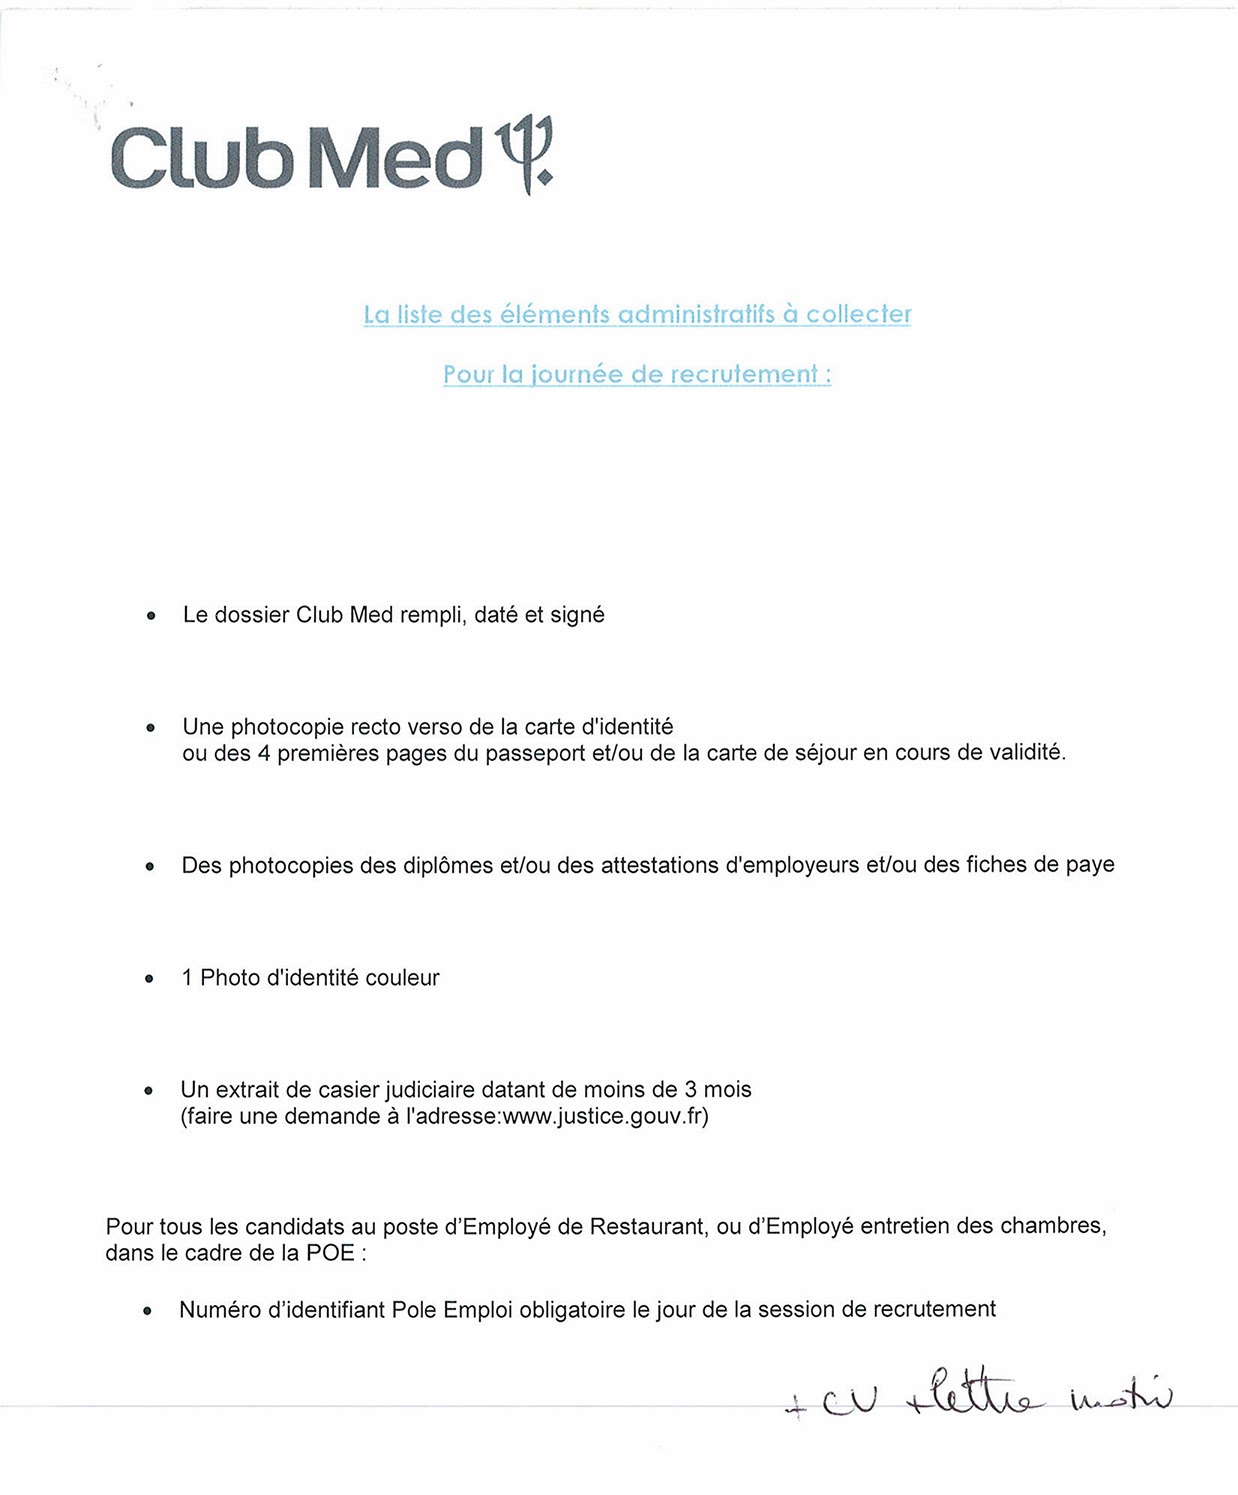 Mission Locale de la Seyne sur Mer: Le Club Med recrute 